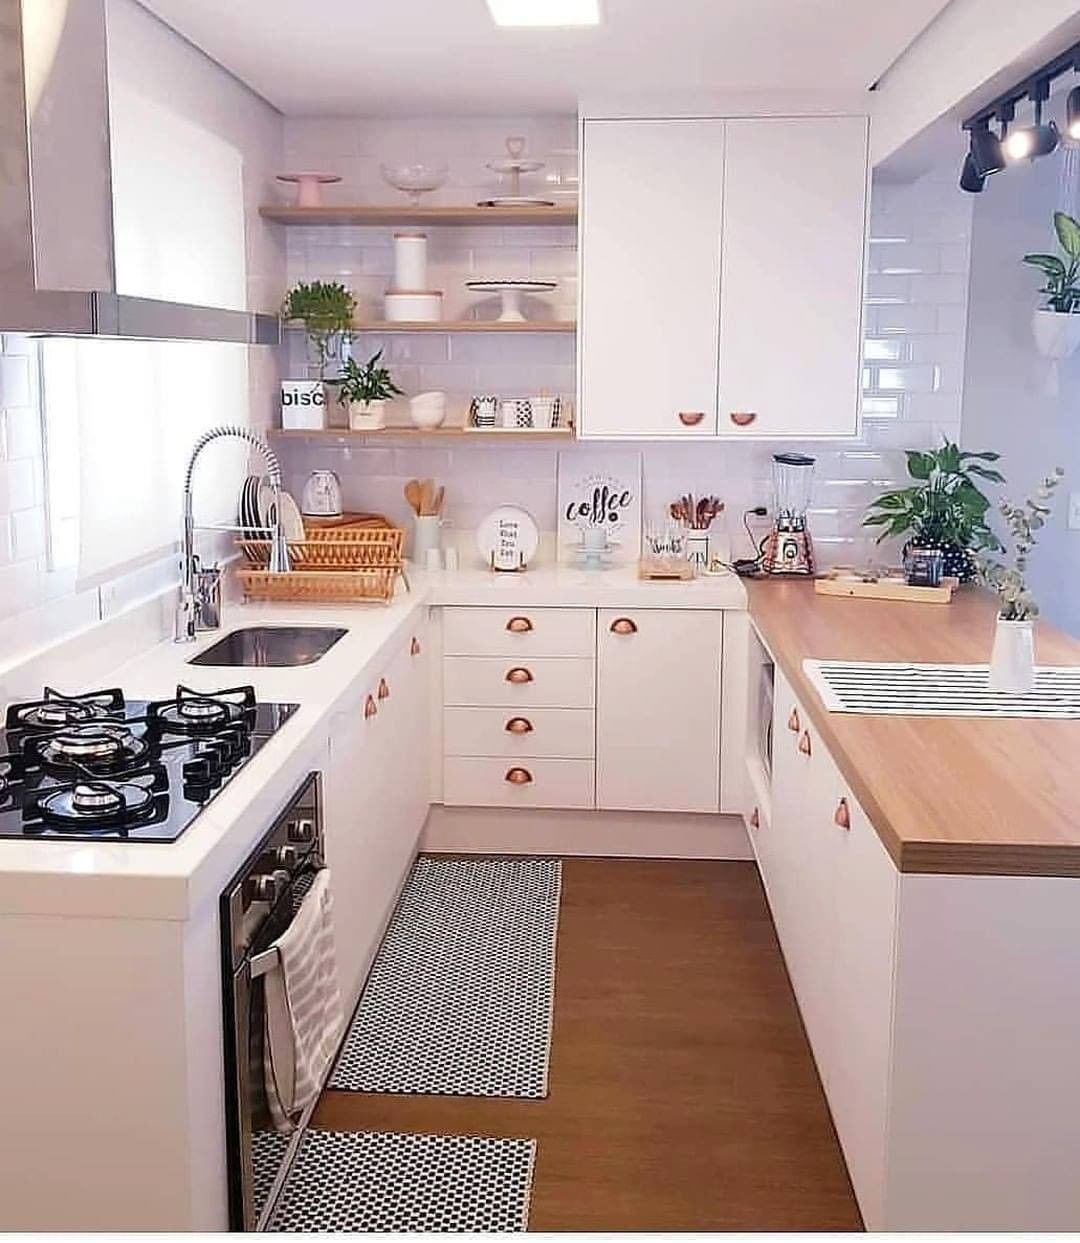 Ide Kreatif Desain Dapur Minimalis 2x2 Beserta Contohnya Rumah Inspirasi Dan Informasi Sederhana